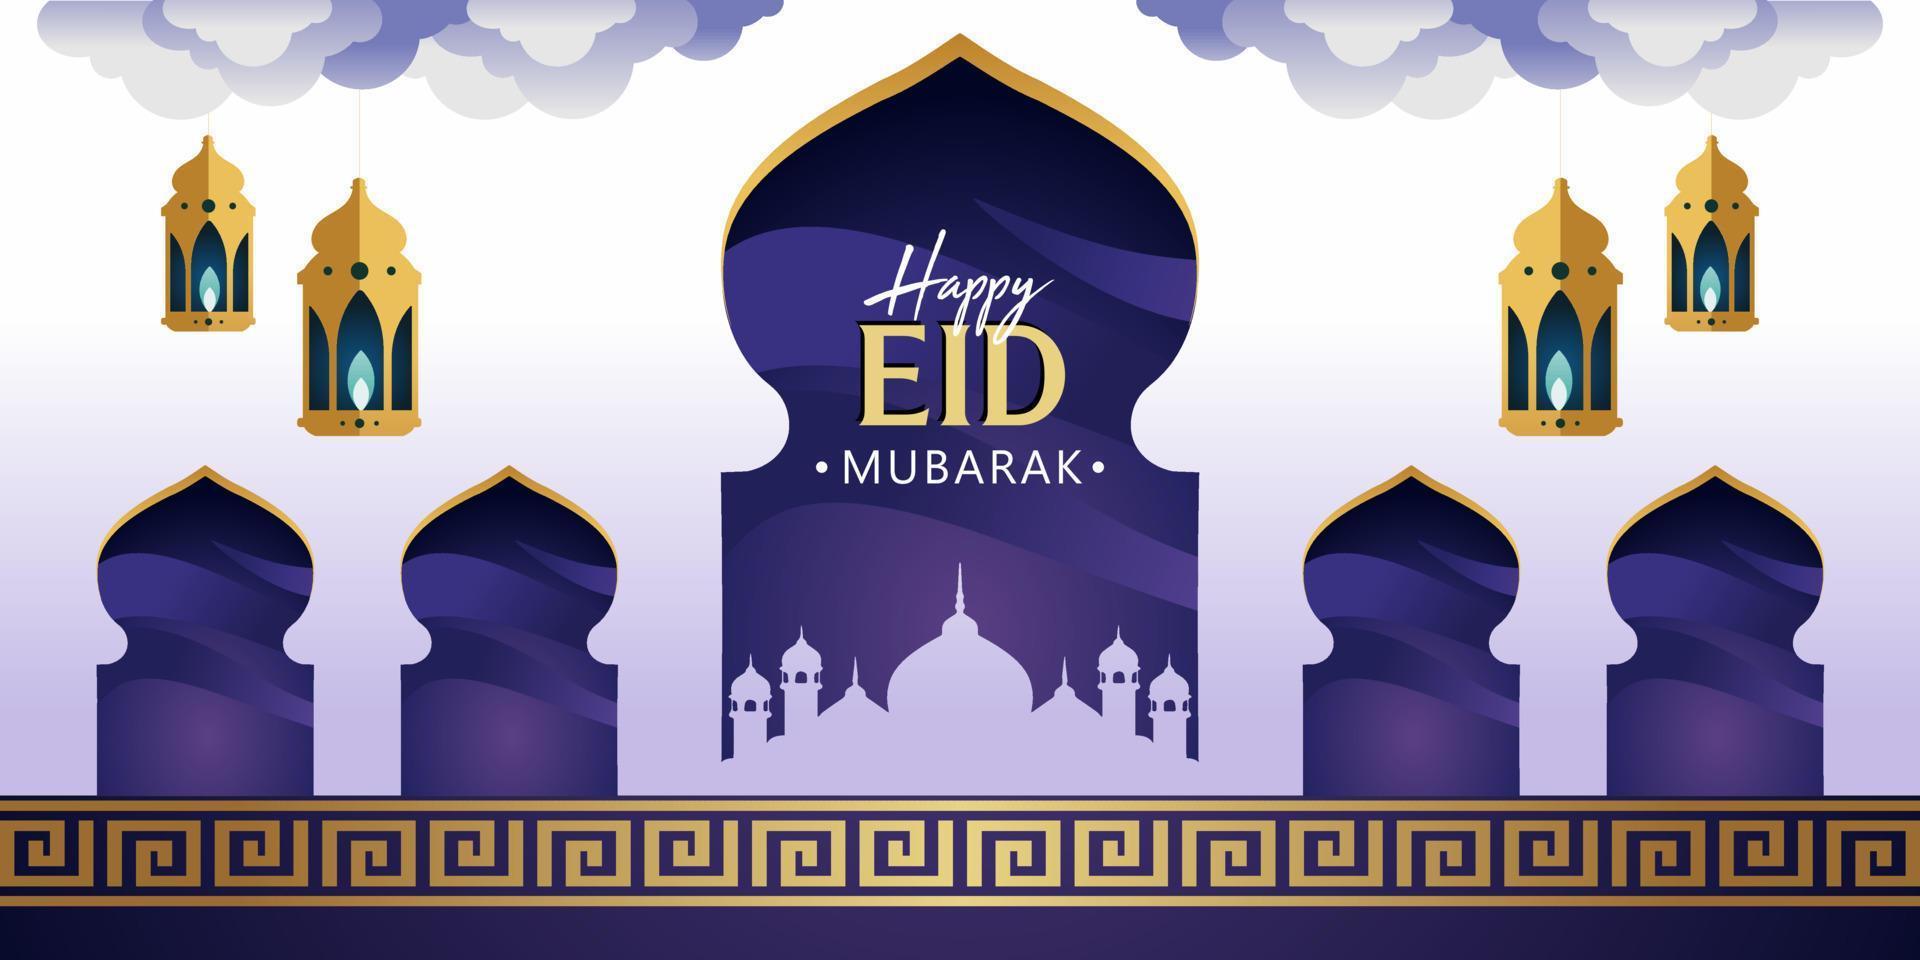 conception de fond eid mubarak. illustration vectorielle adaptée aux cartes de voeux, affiches et bannières. vecteur